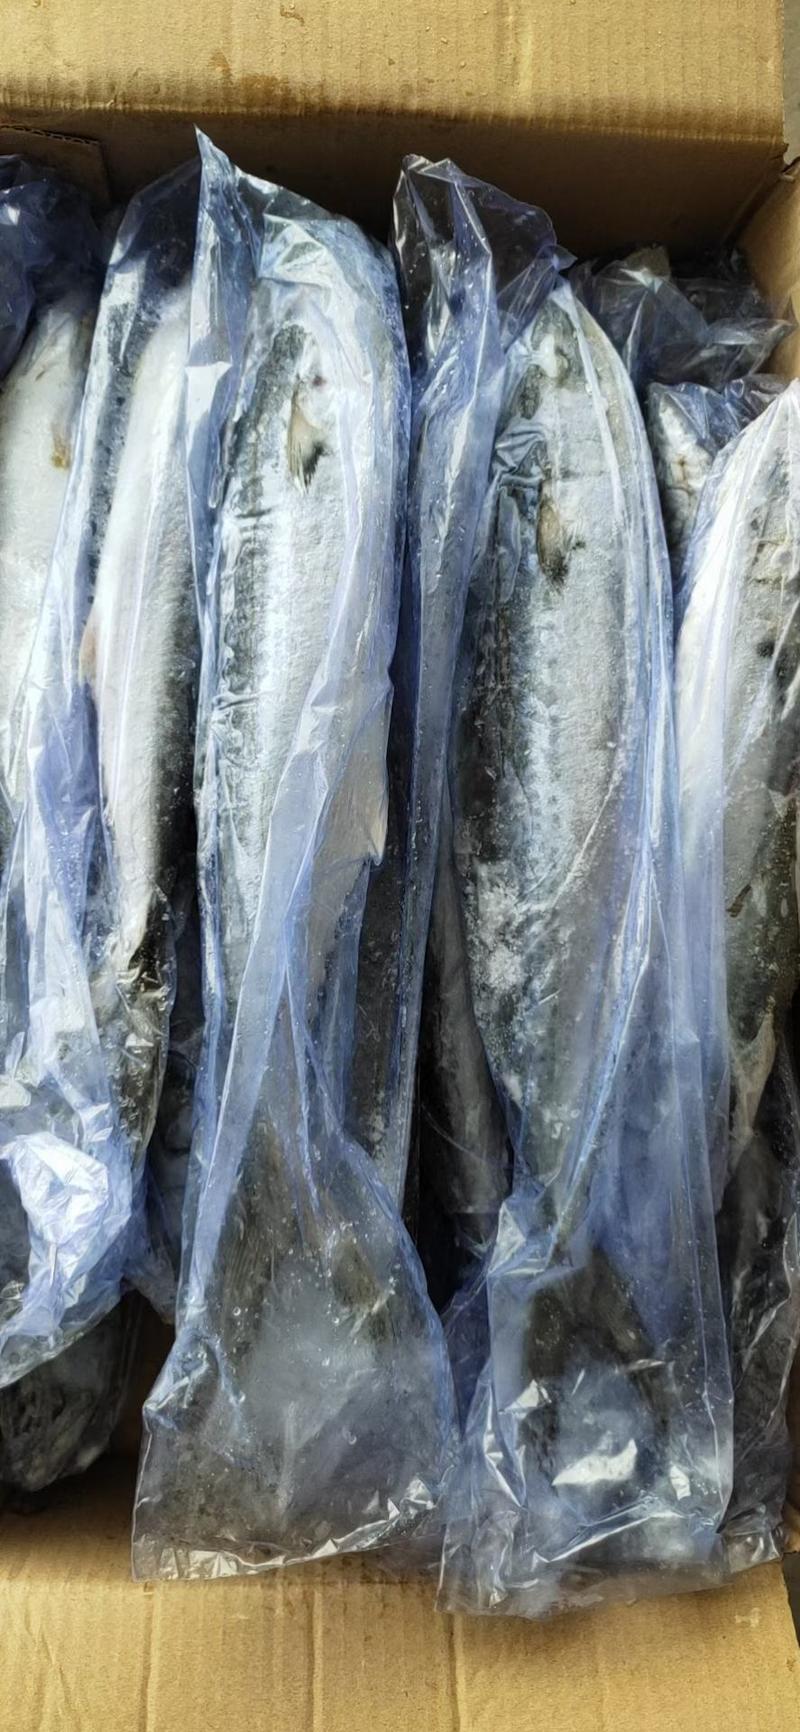 鲅鱼马鲛鱼单条一斤多9块一斤批发新鲜速冻量大批发